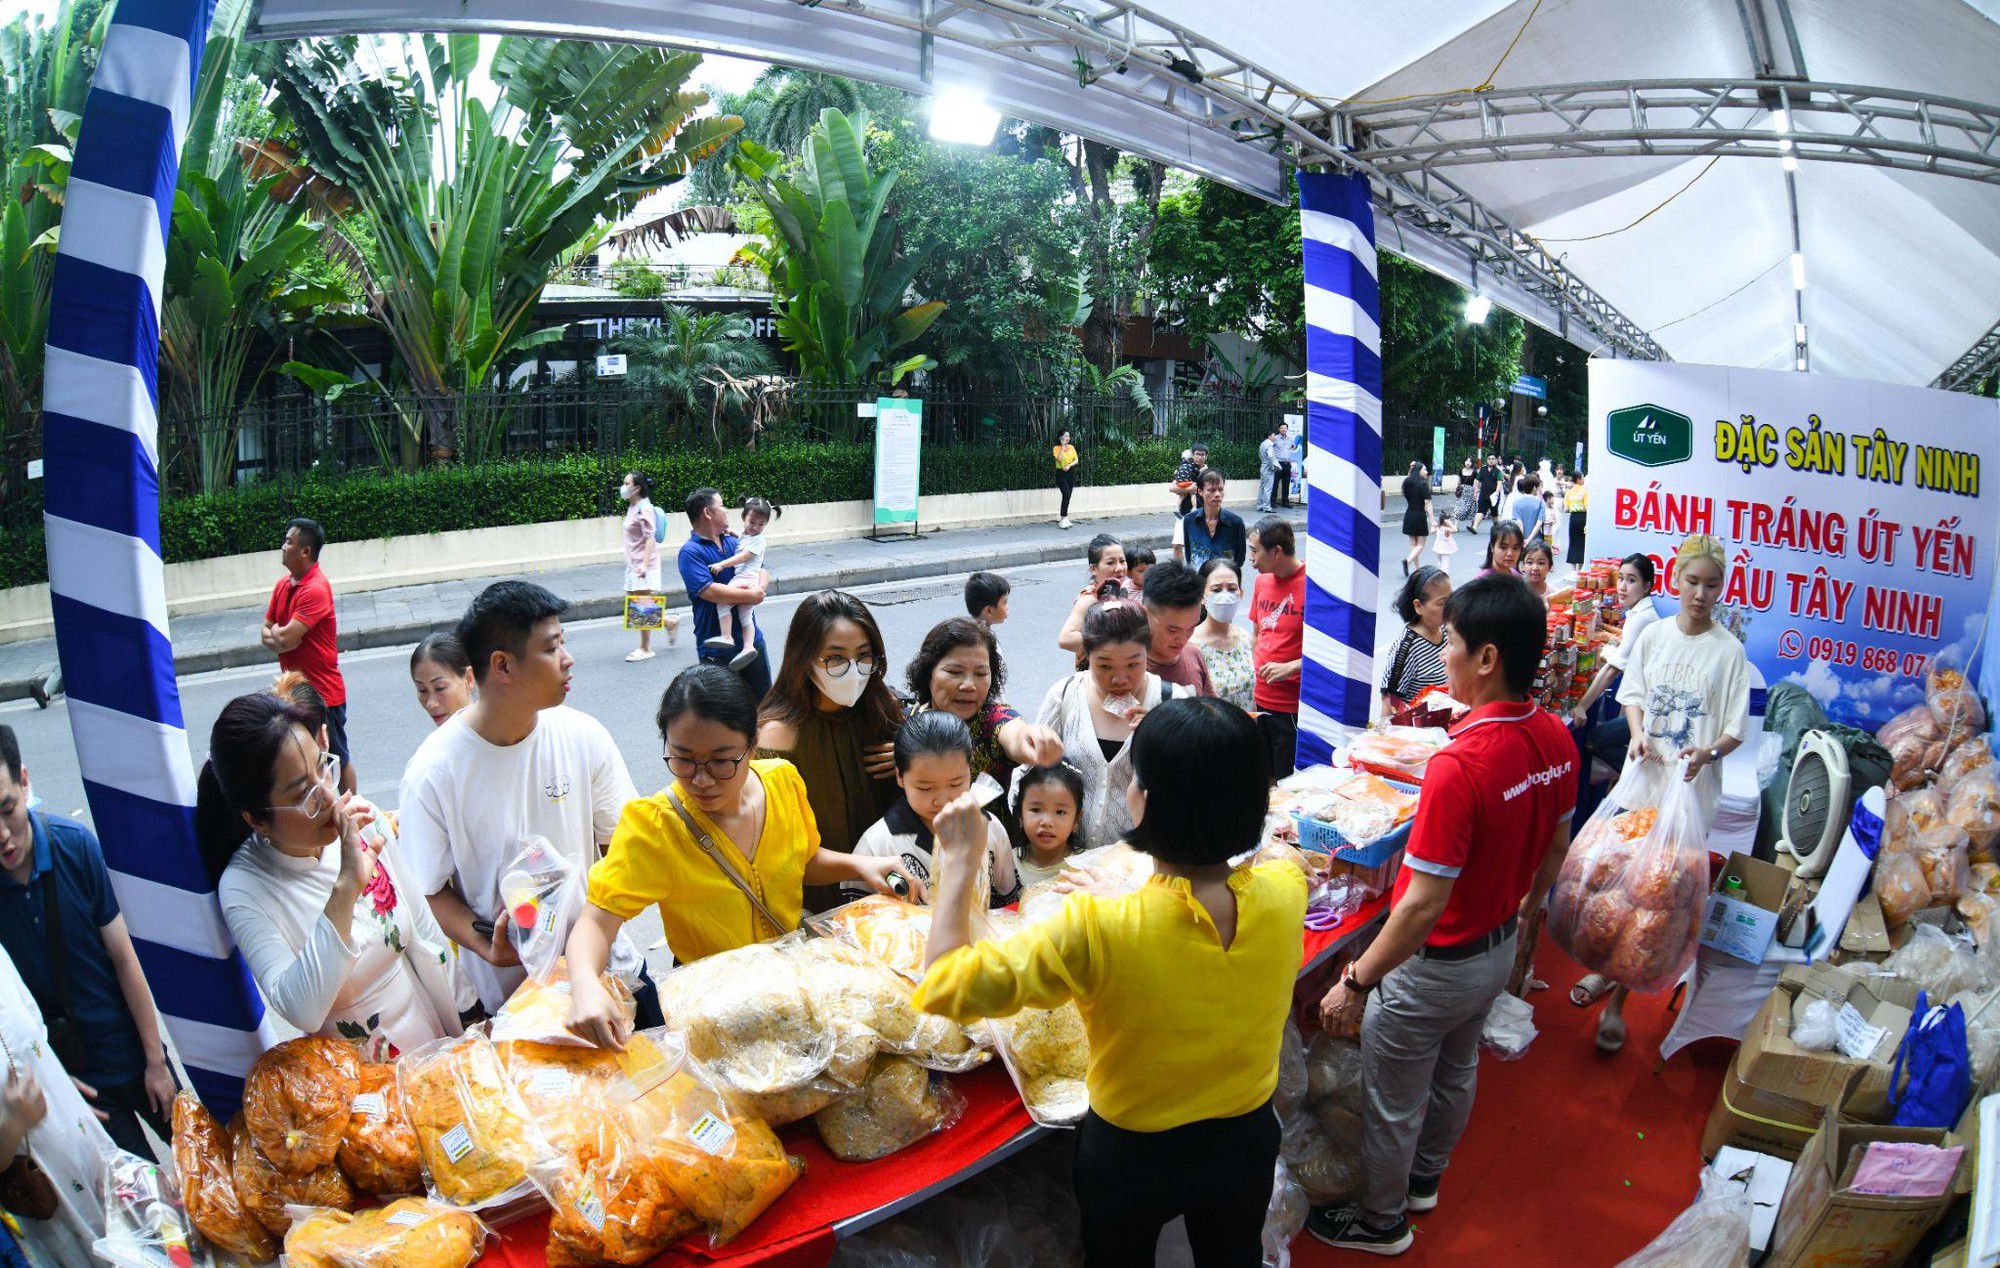 Tây Ninh trở thành “từ khóa hot” của du khách miền Bắc sau Ngày Tây Ninh tại Hà Nội - Ảnh 2.